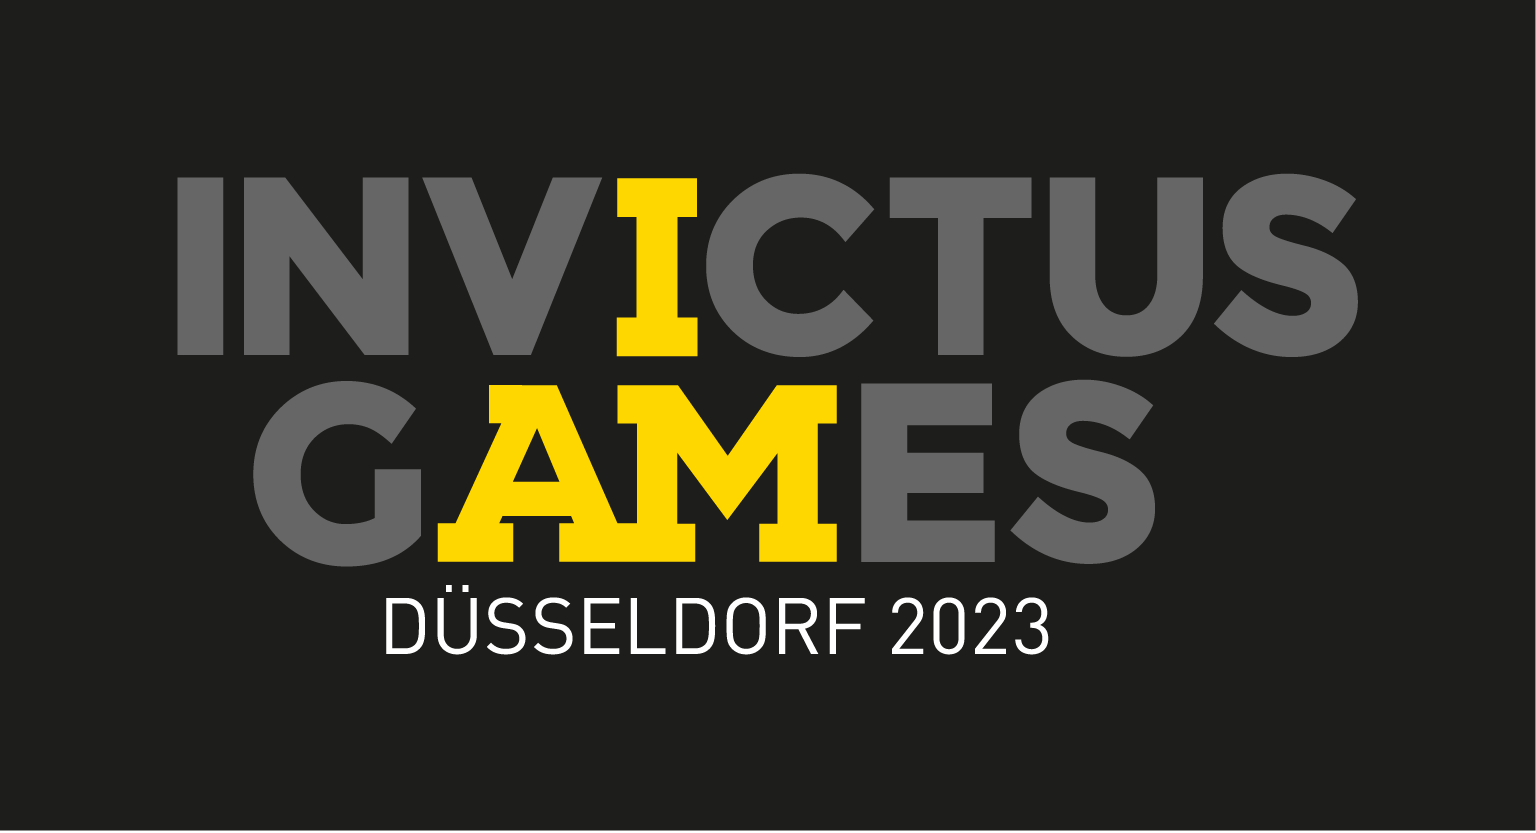 Invictus Games Logo